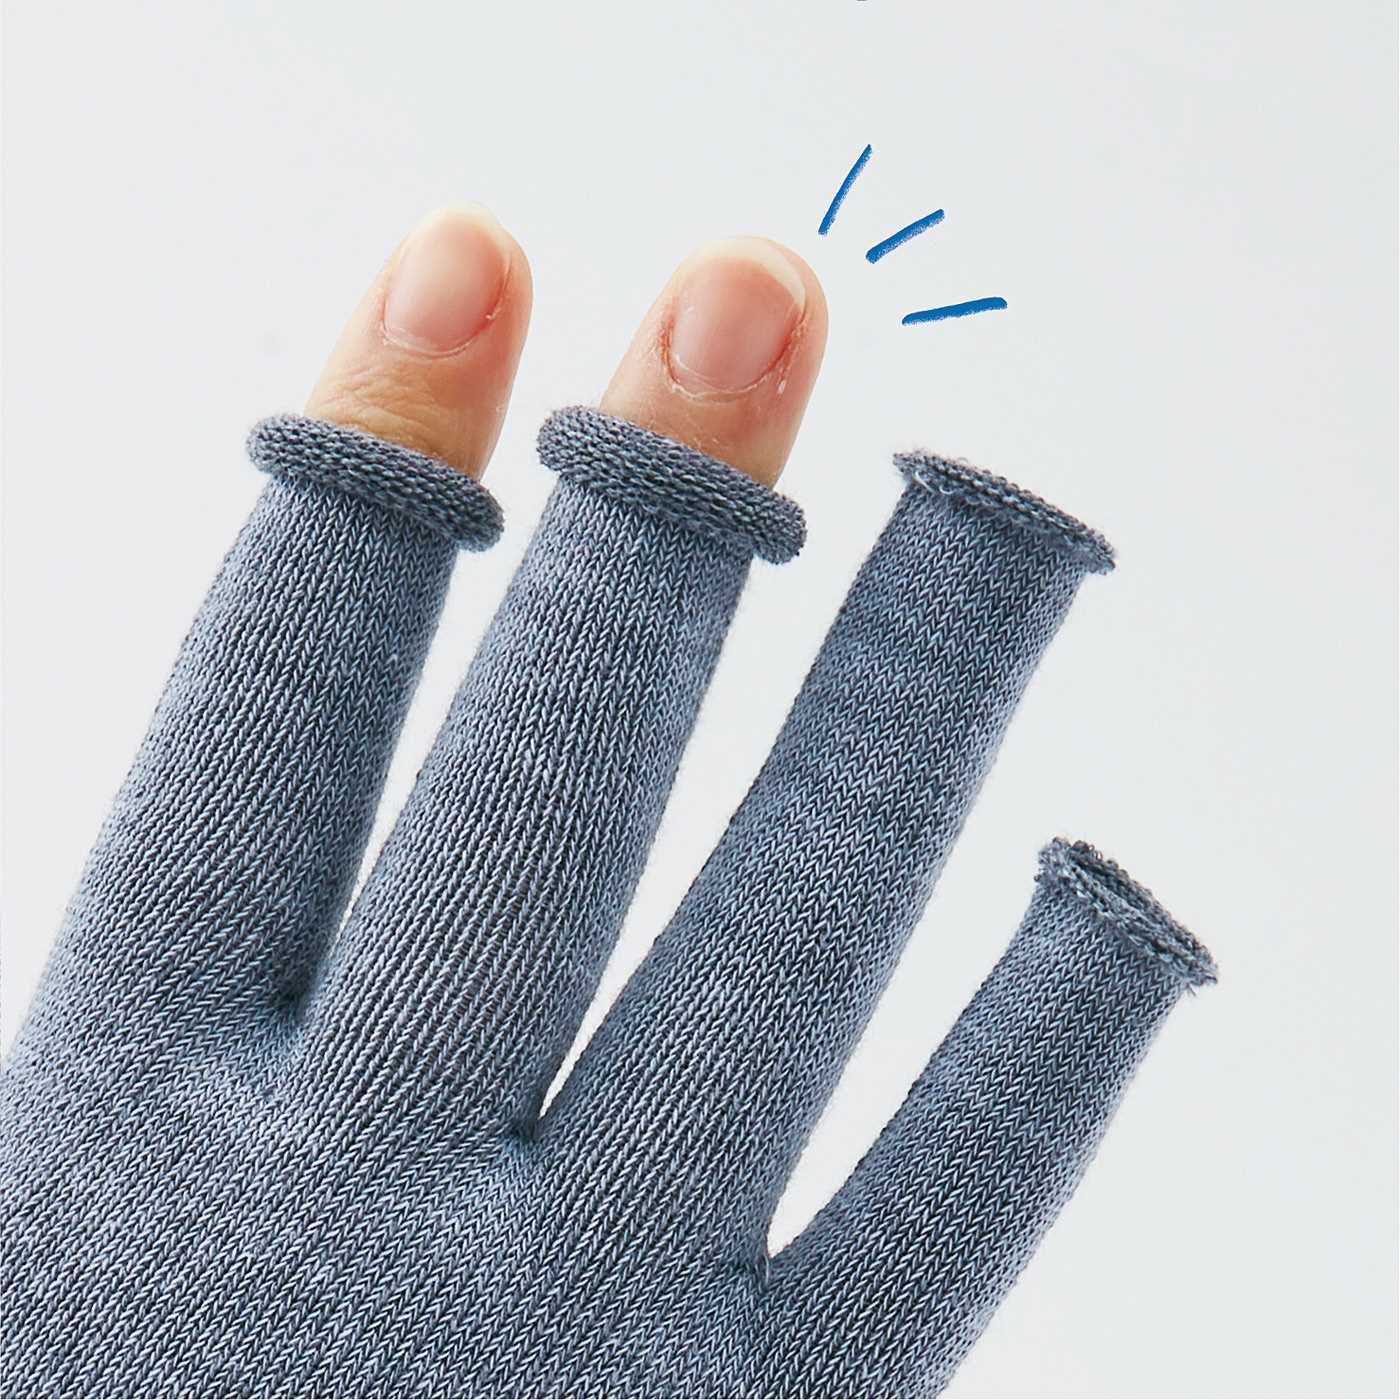 Real Stock|ラミプリュス　肌側シルクでセルフケア　指先が出せる　ホールガーメント（R）UV手袋|手のひら全体を覆いながら、指先は穴あきだからすぐに指先を出せます。